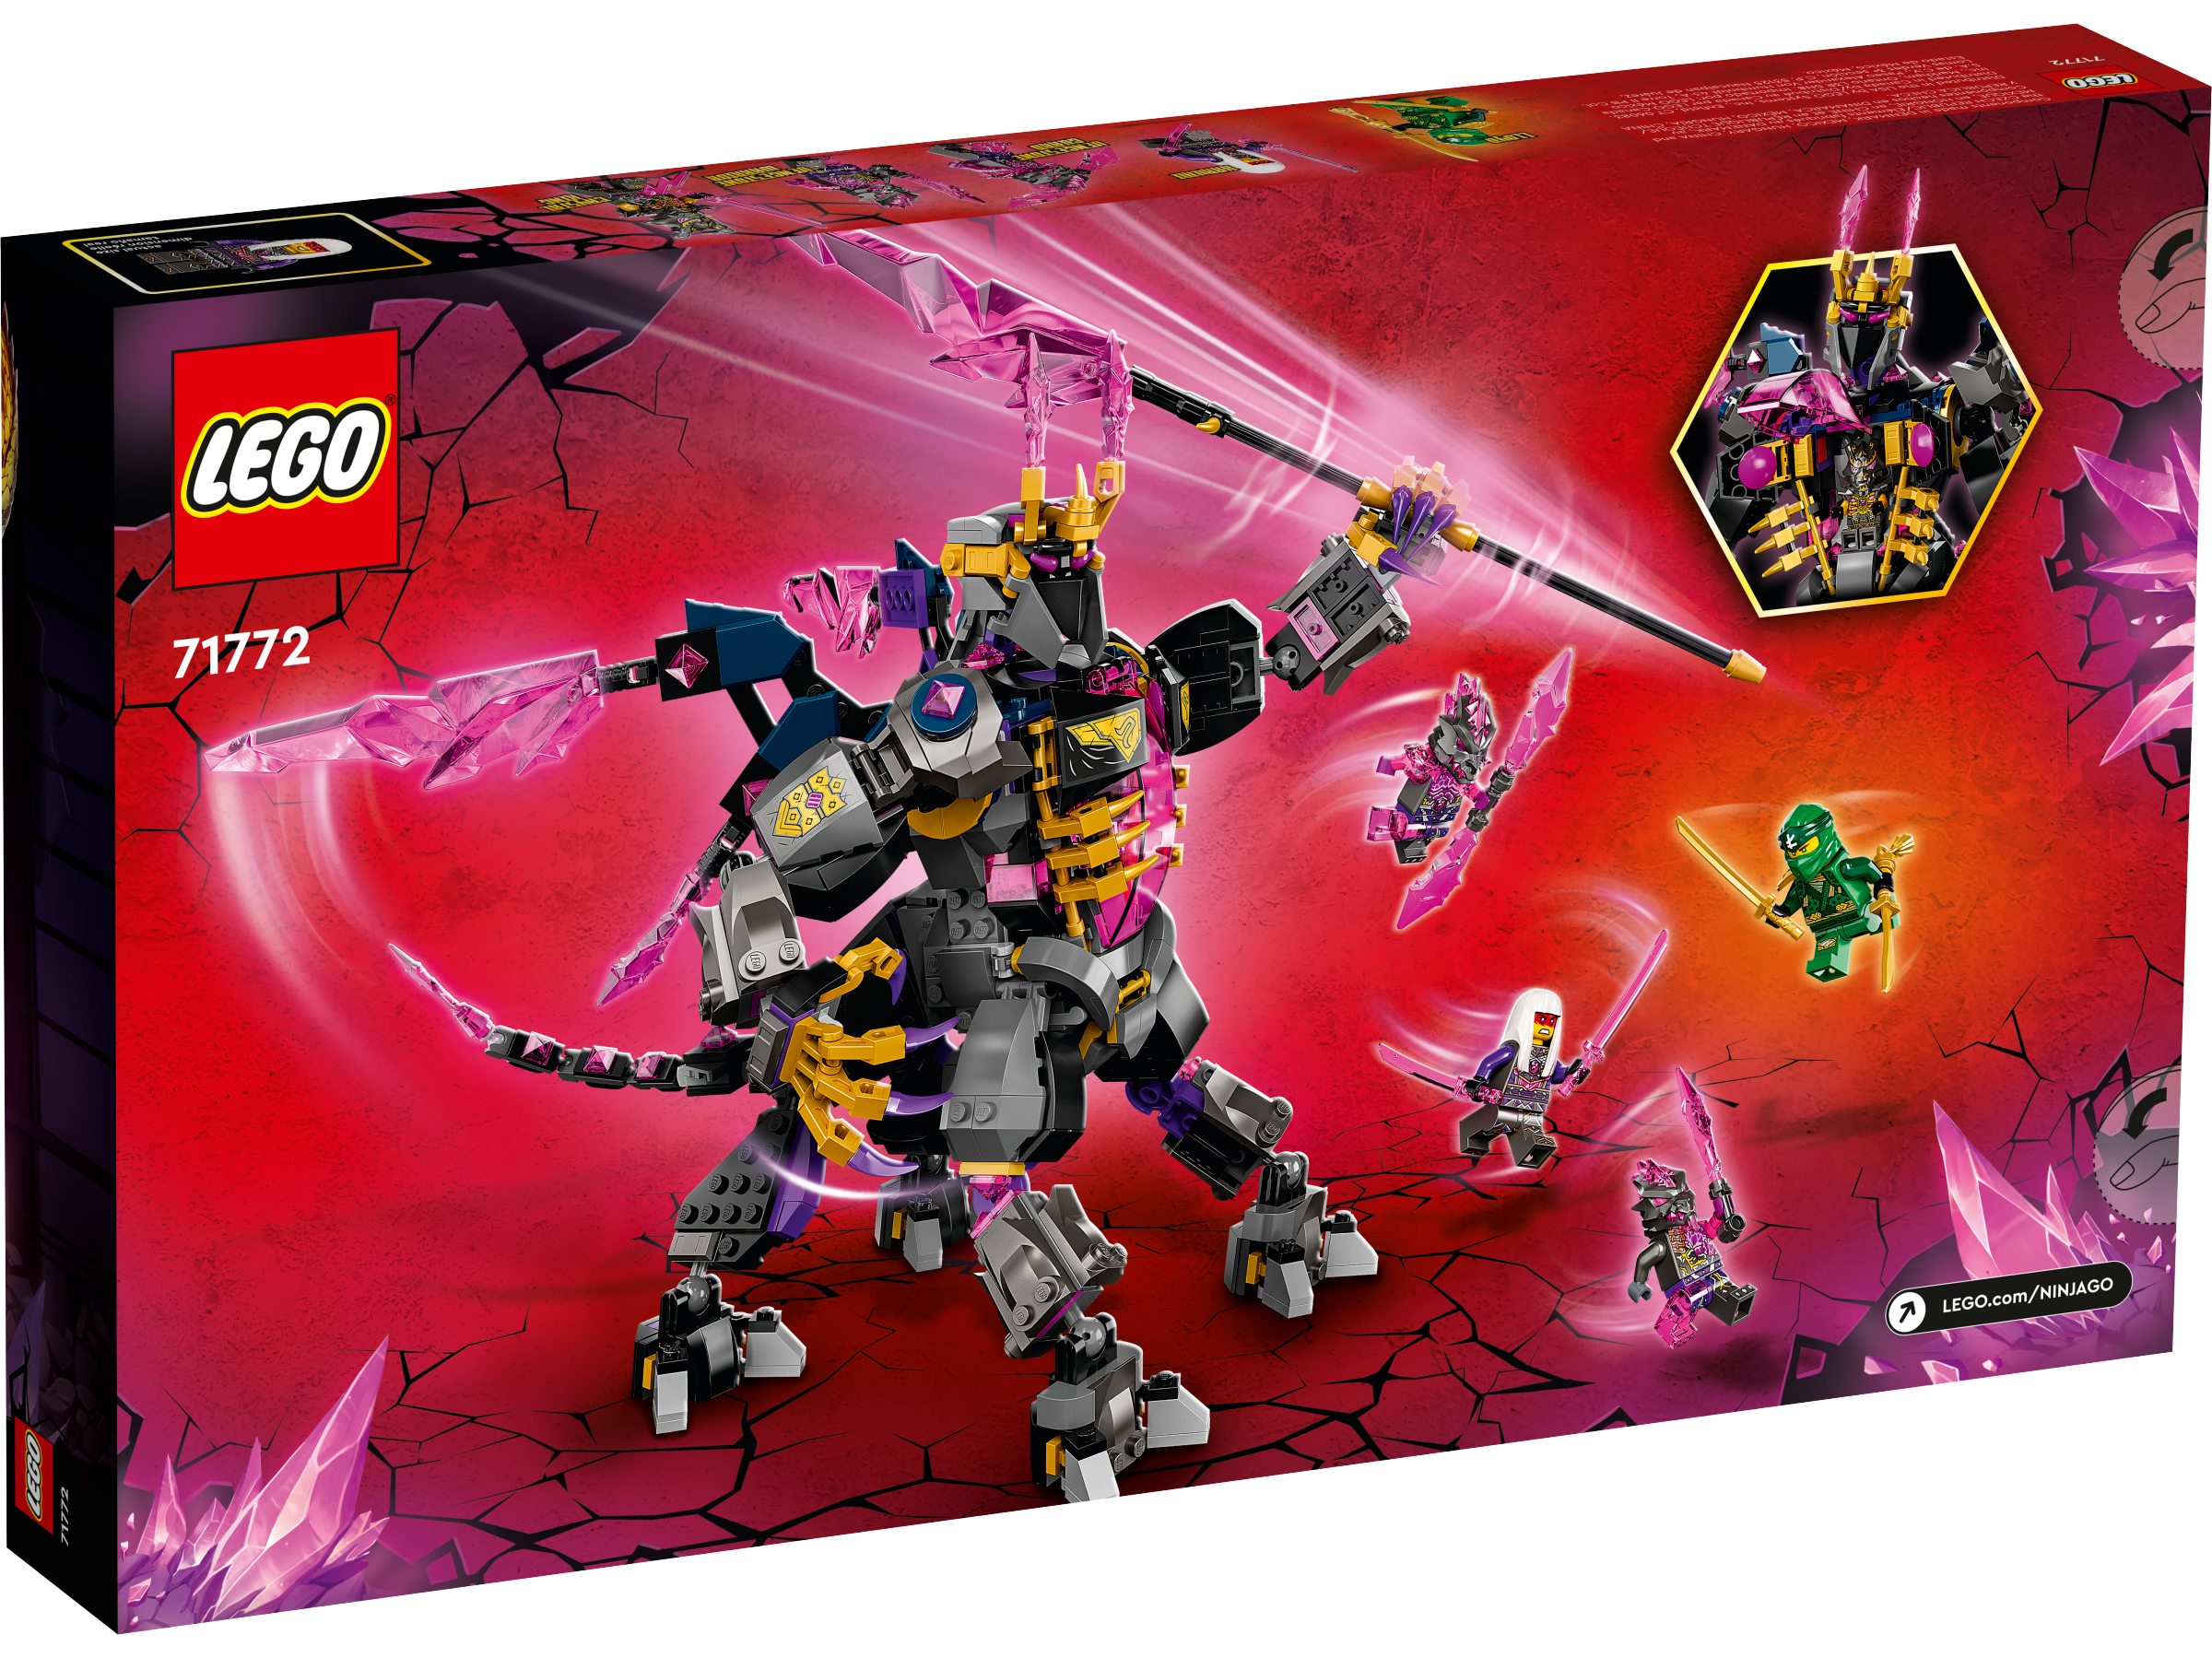 LEGO Ninjago: The Crystal King